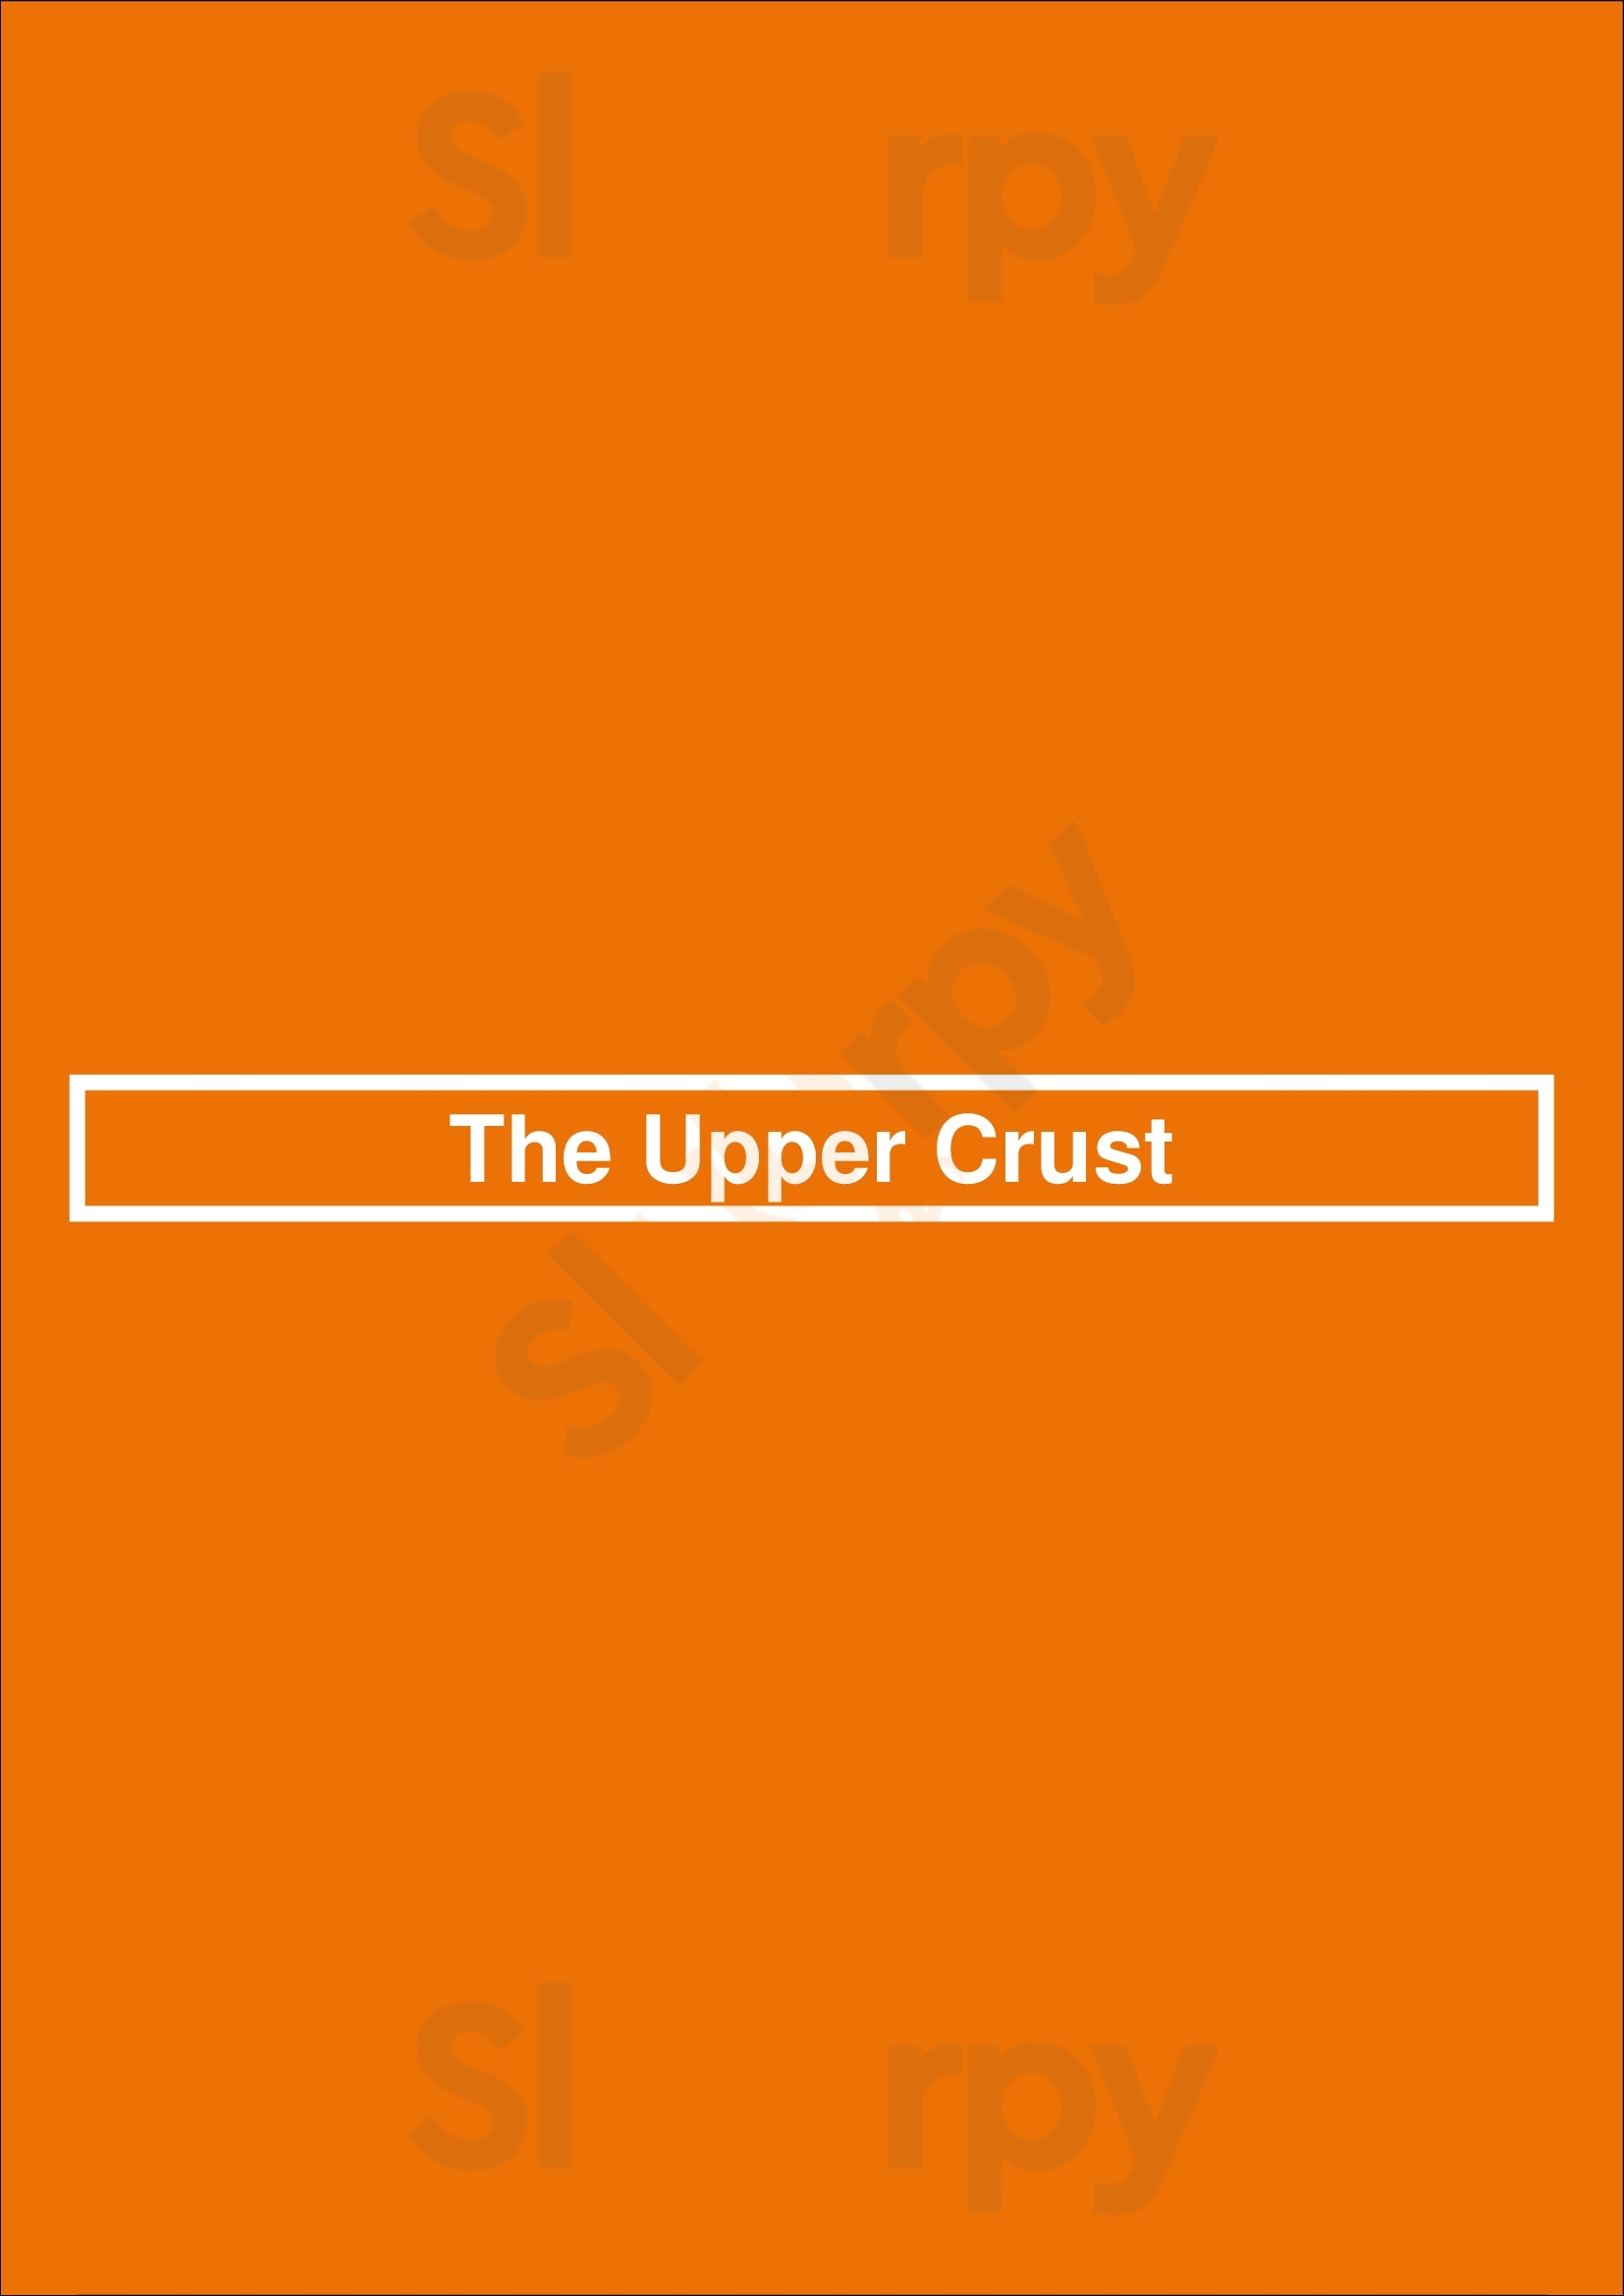 The Upper Crust Pizzeria Boston Menu - 1